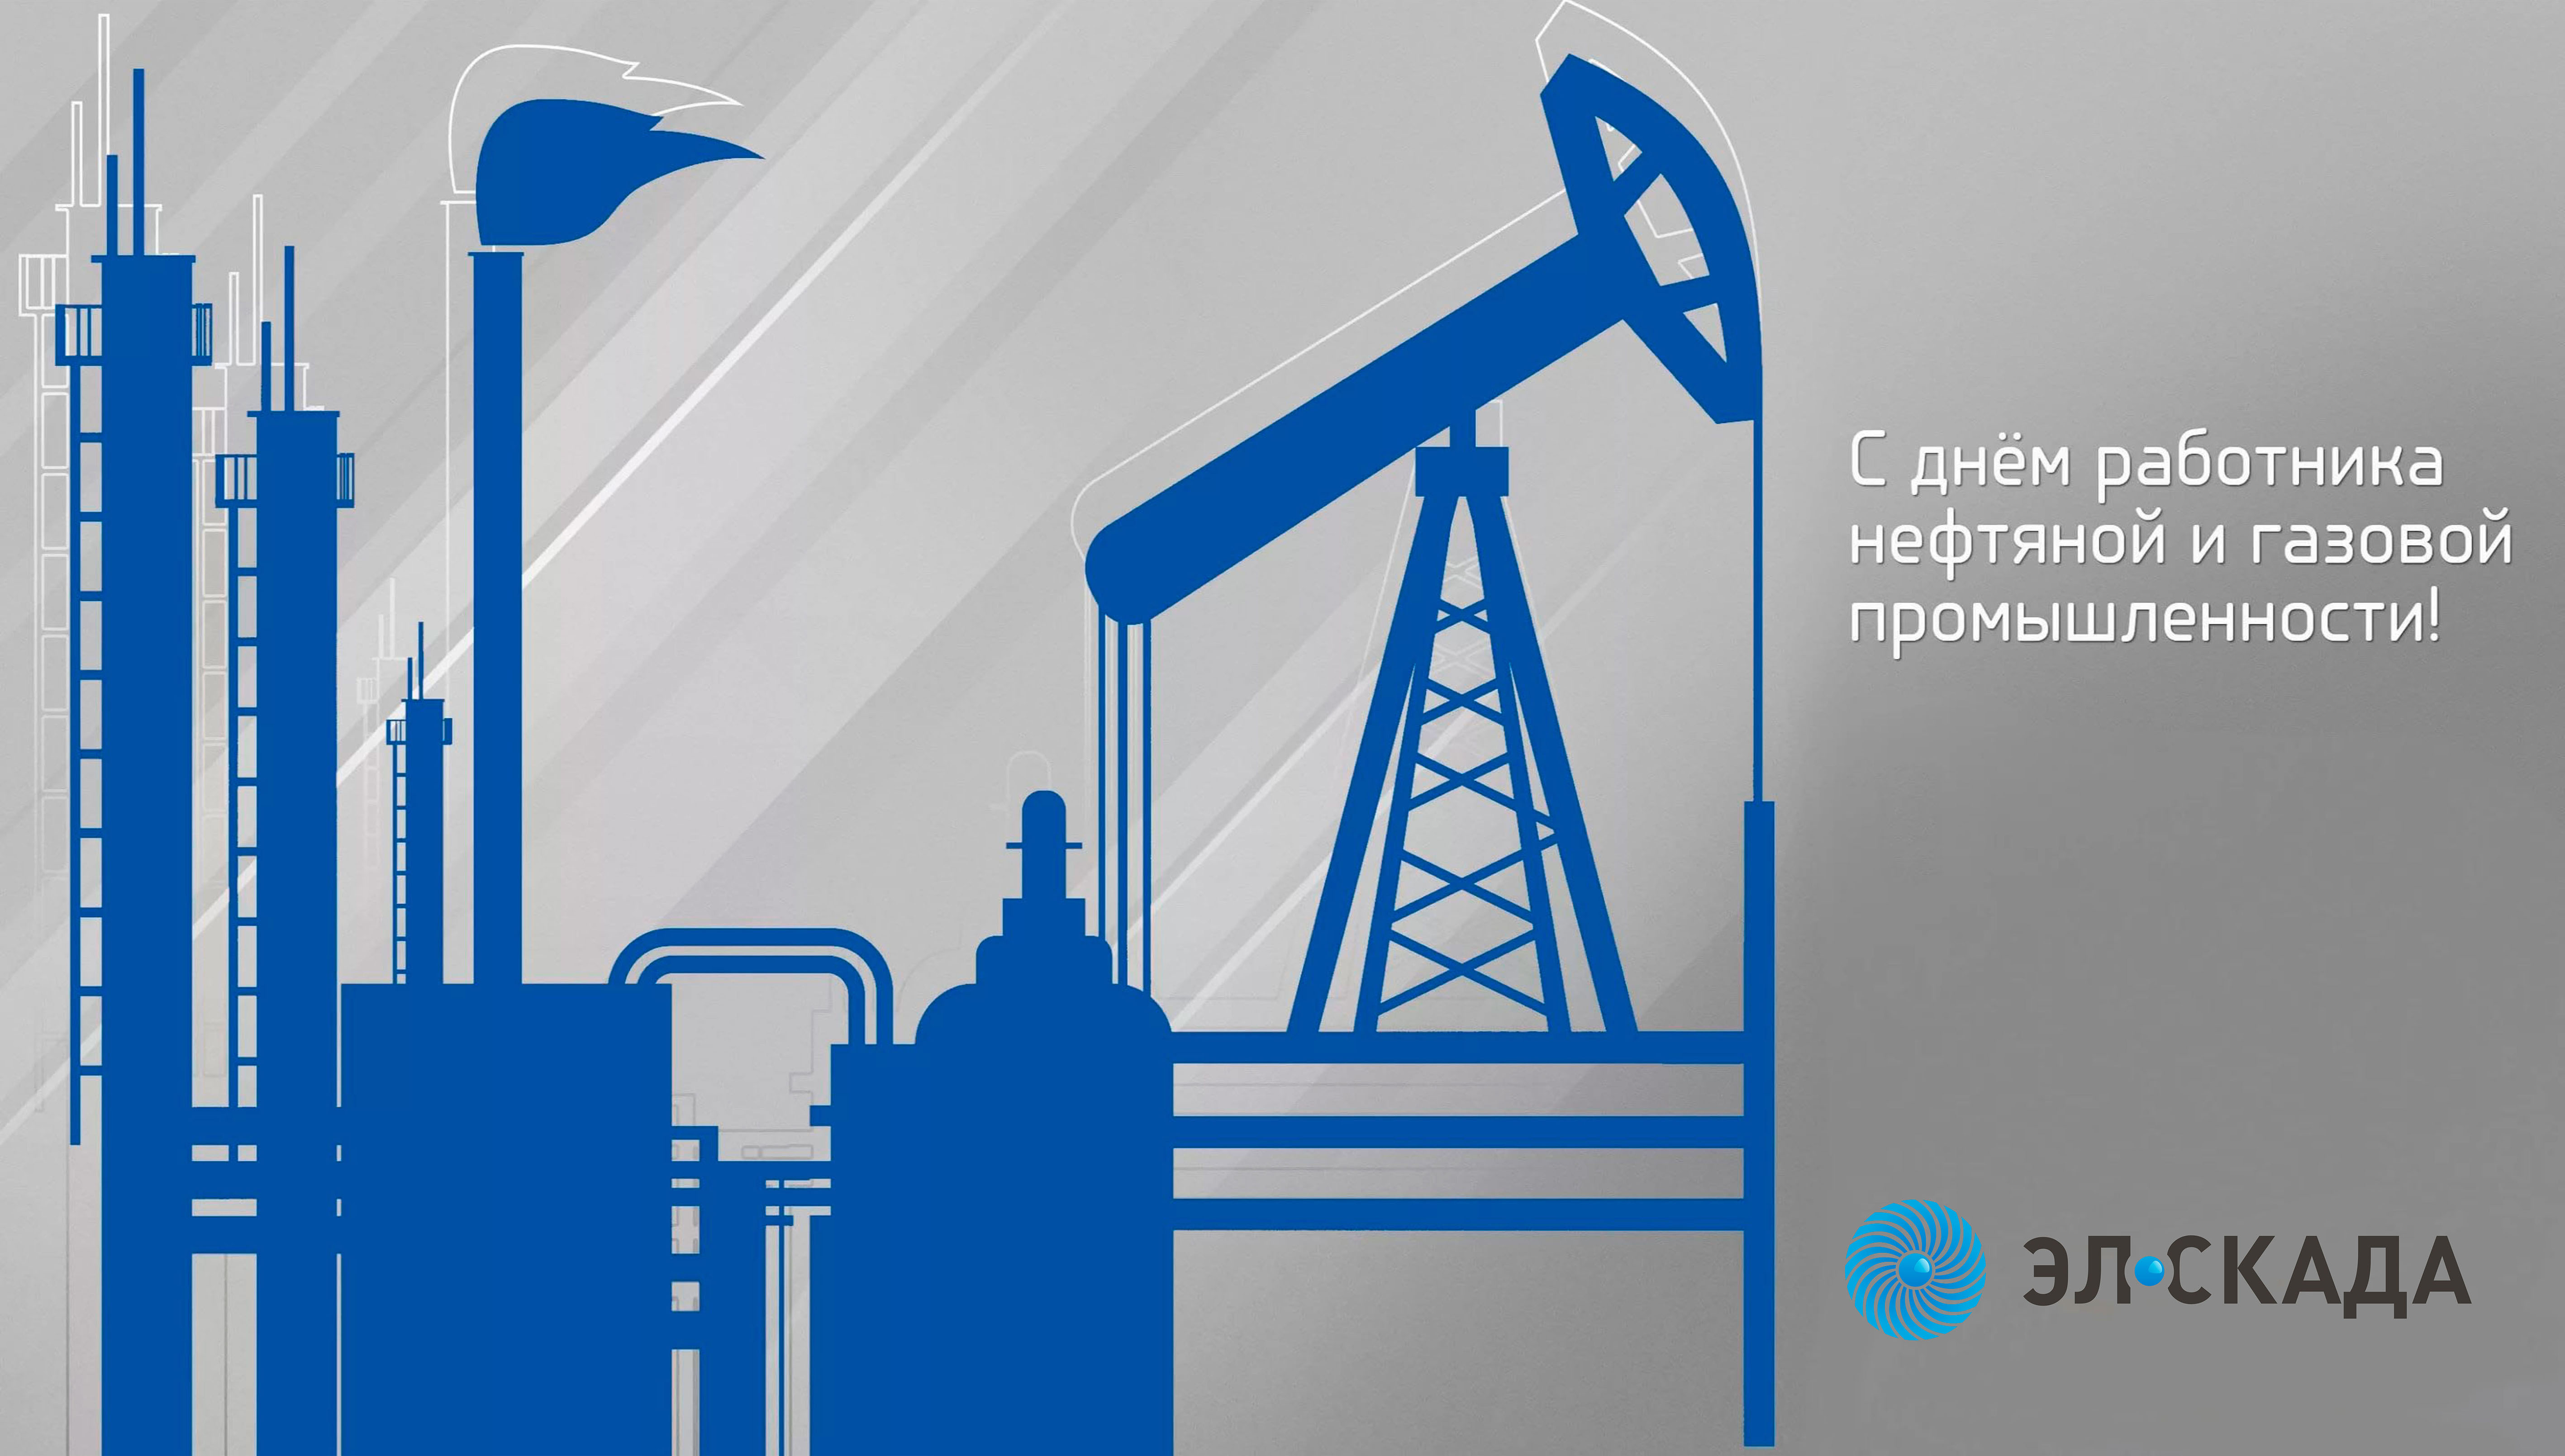 Рисунок на тему нефтяной промышленности